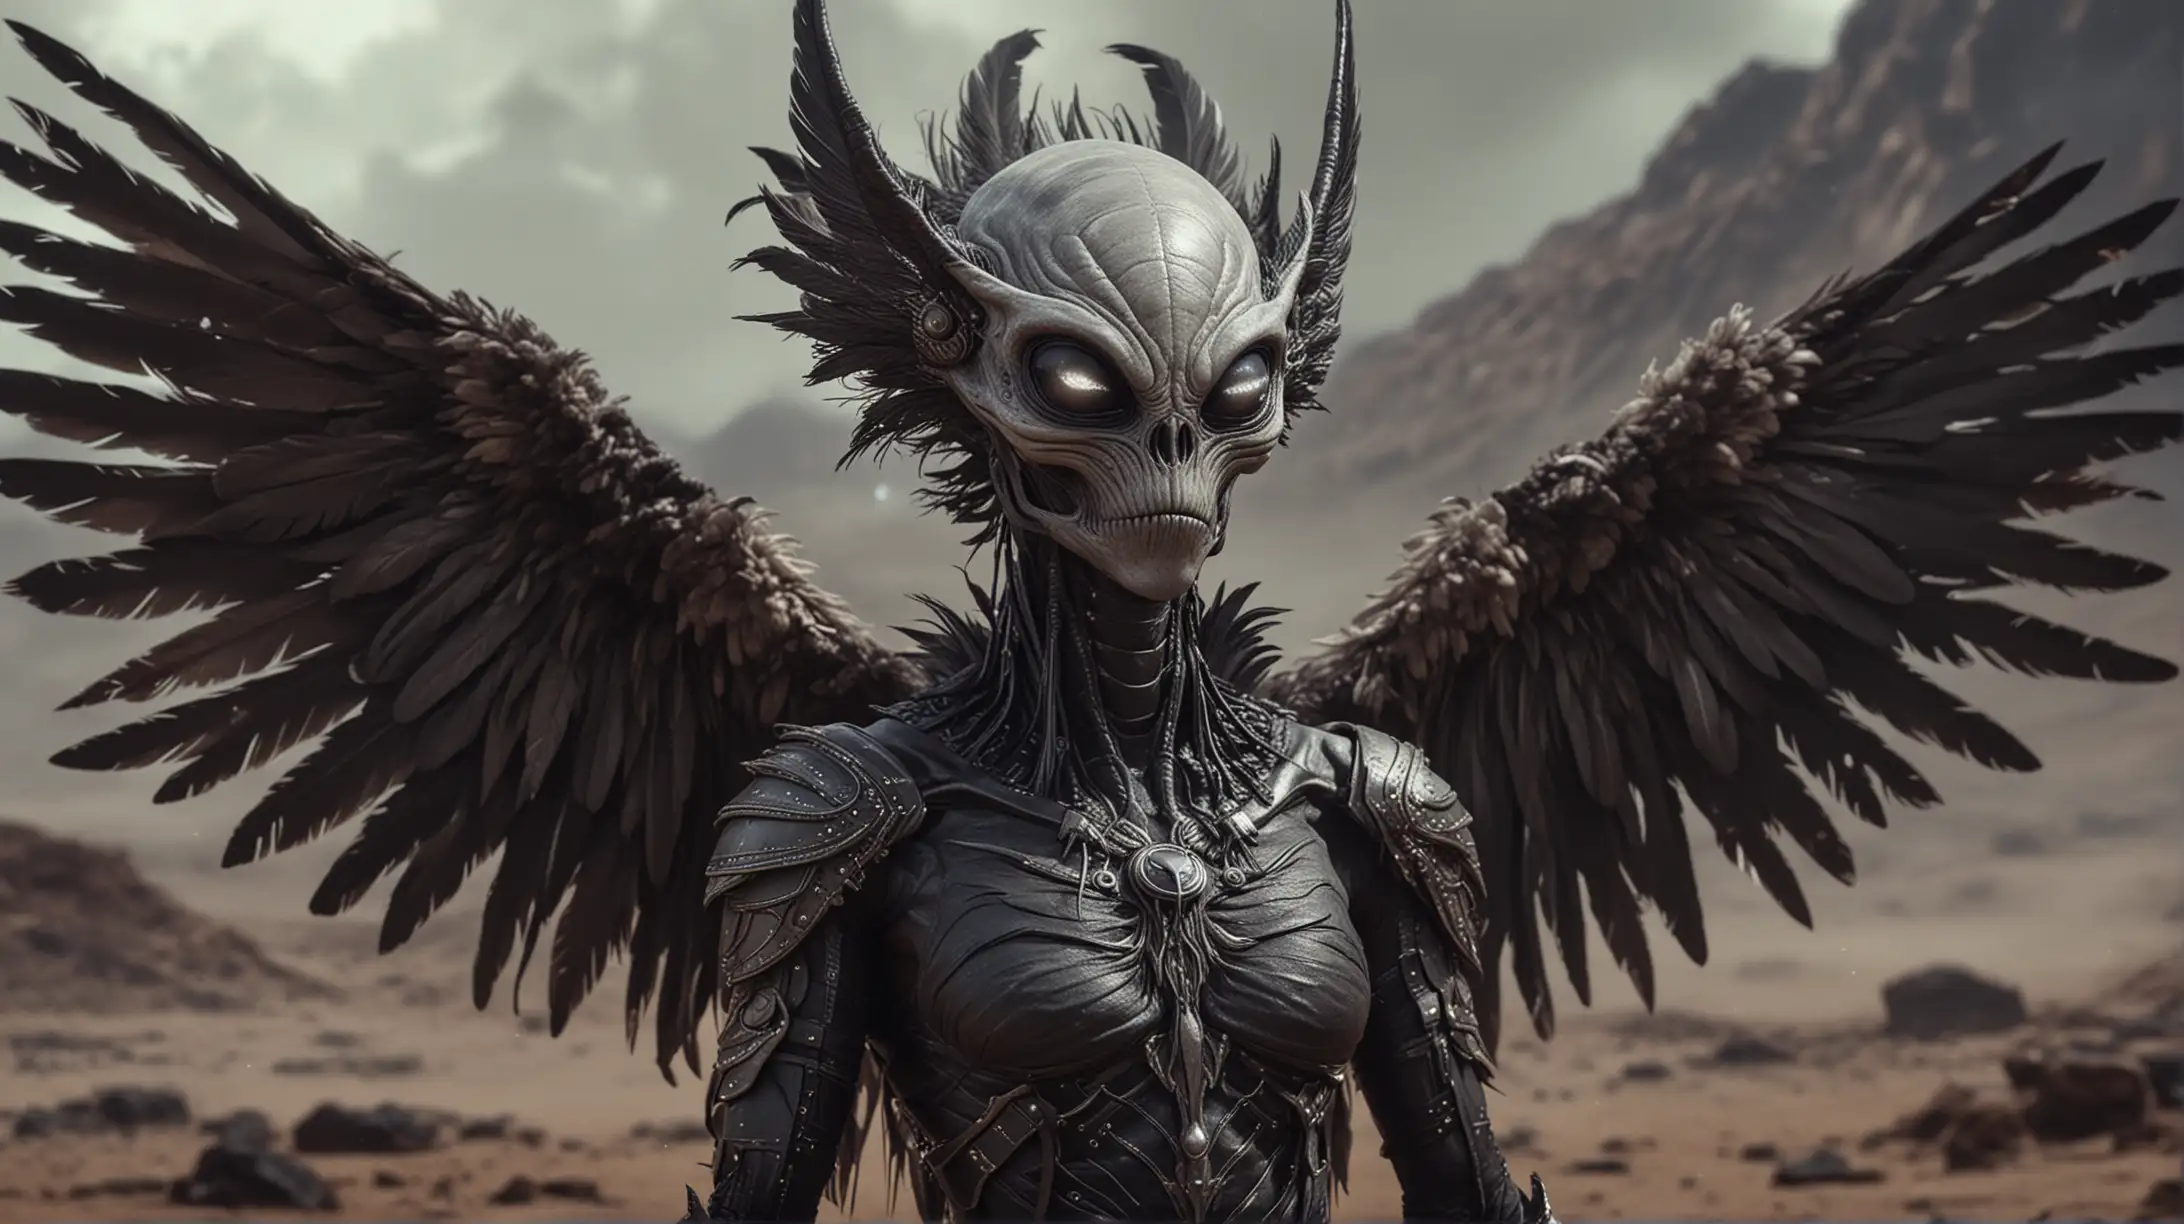 alienigena antropomorfo con plumas y alas negras en la espalda piel grisacea y ojos negros profundos en un planeta extraño